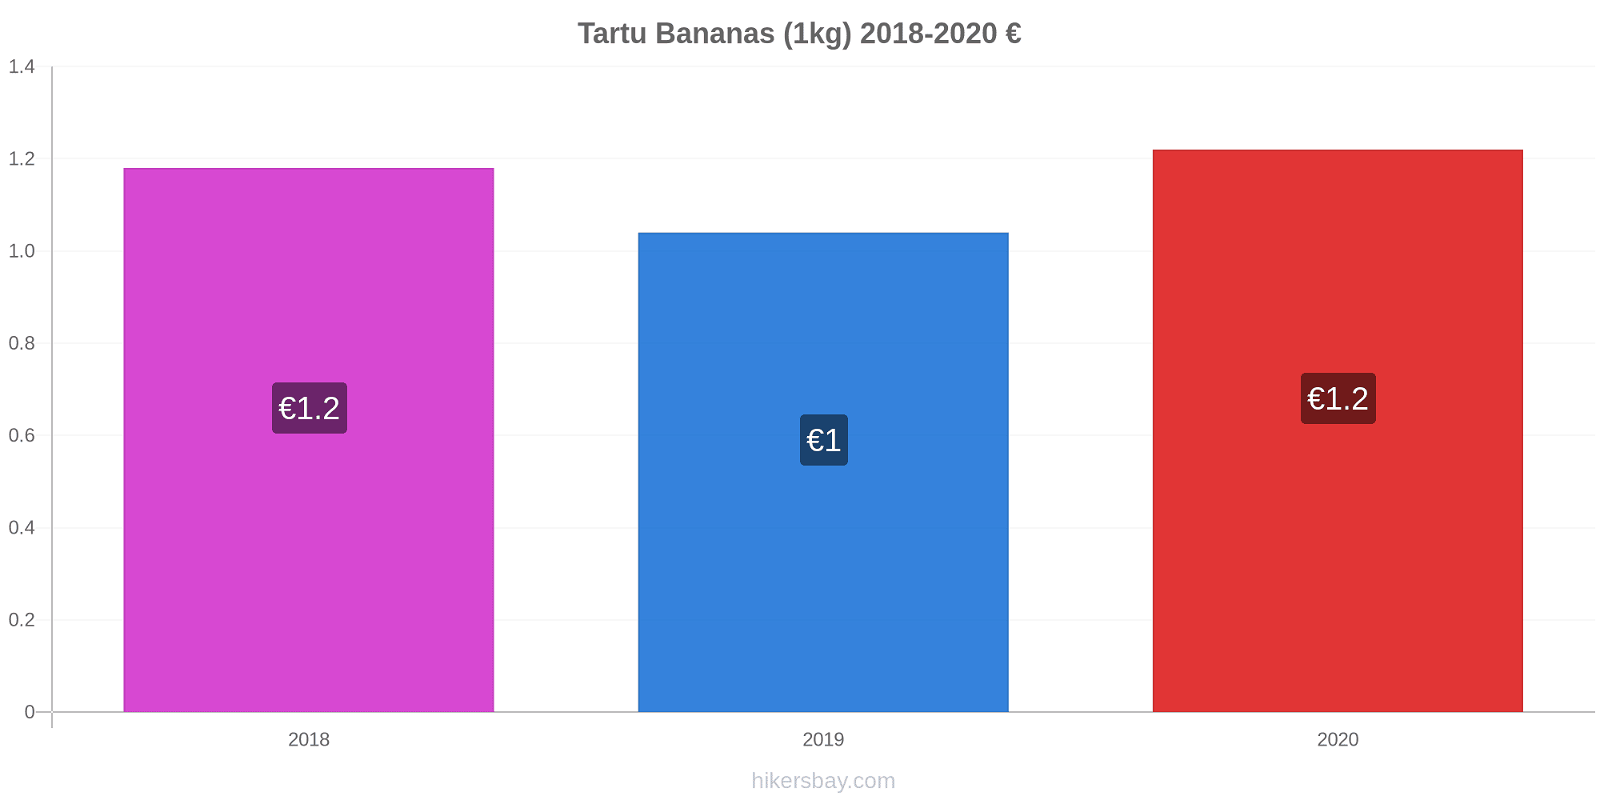 Tartu variação de preço Banana (1kg) hikersbay.com